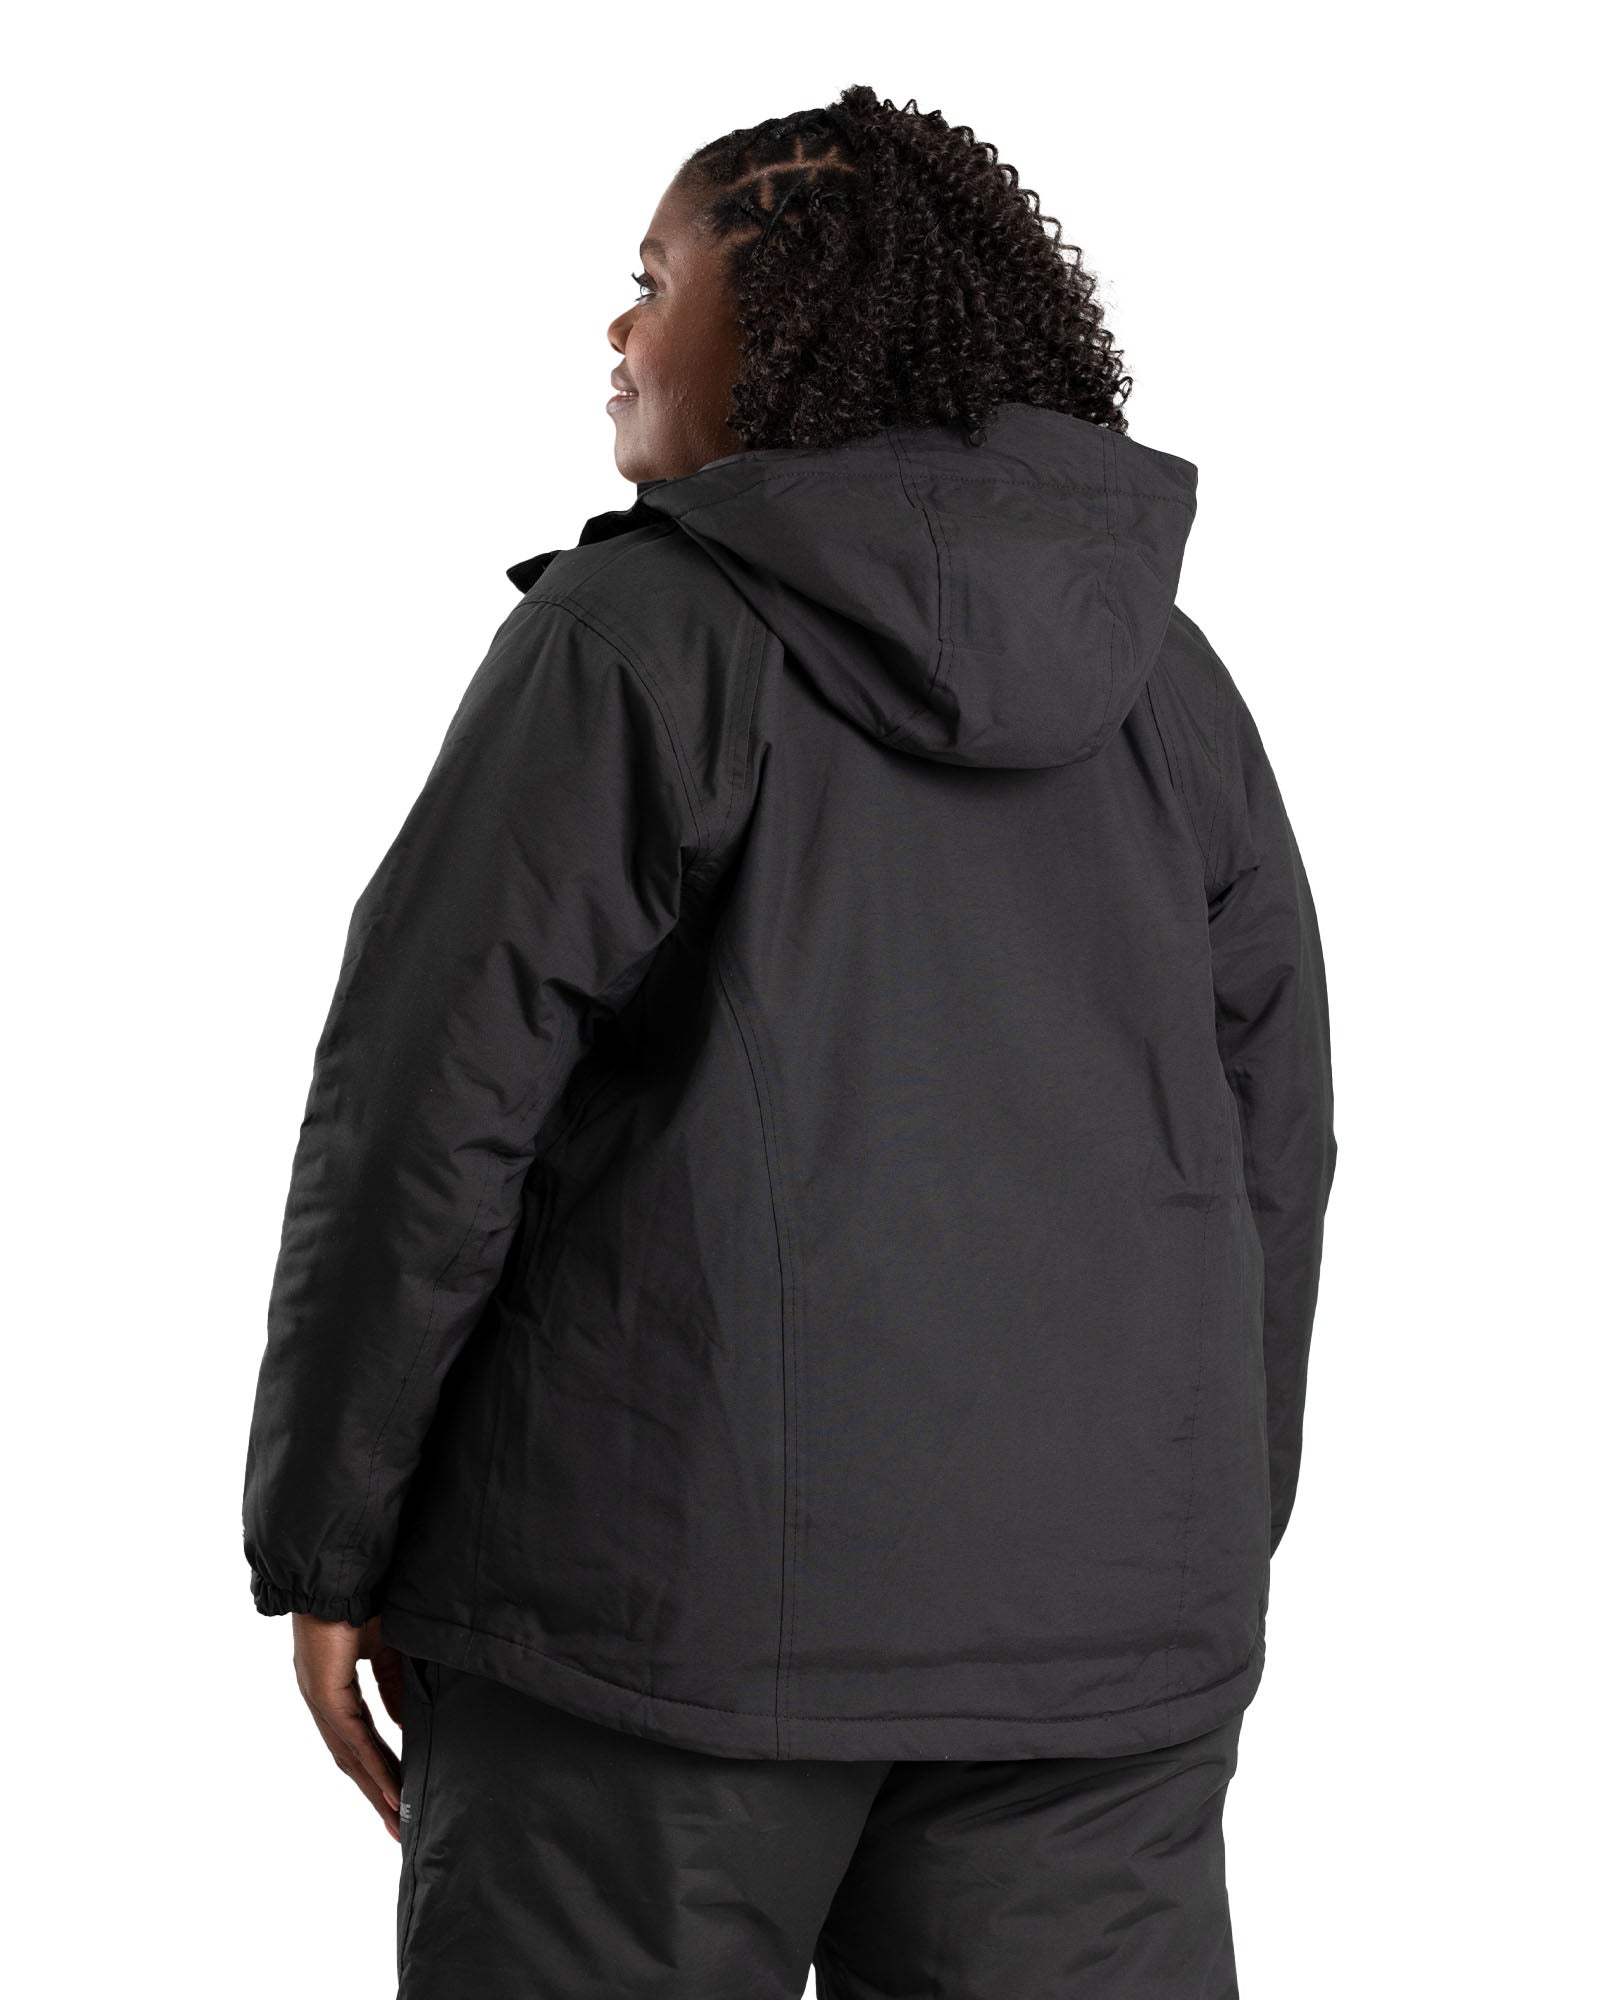 WRJ27BK Women's Coastline Waterproof Insulated Storm Jacket